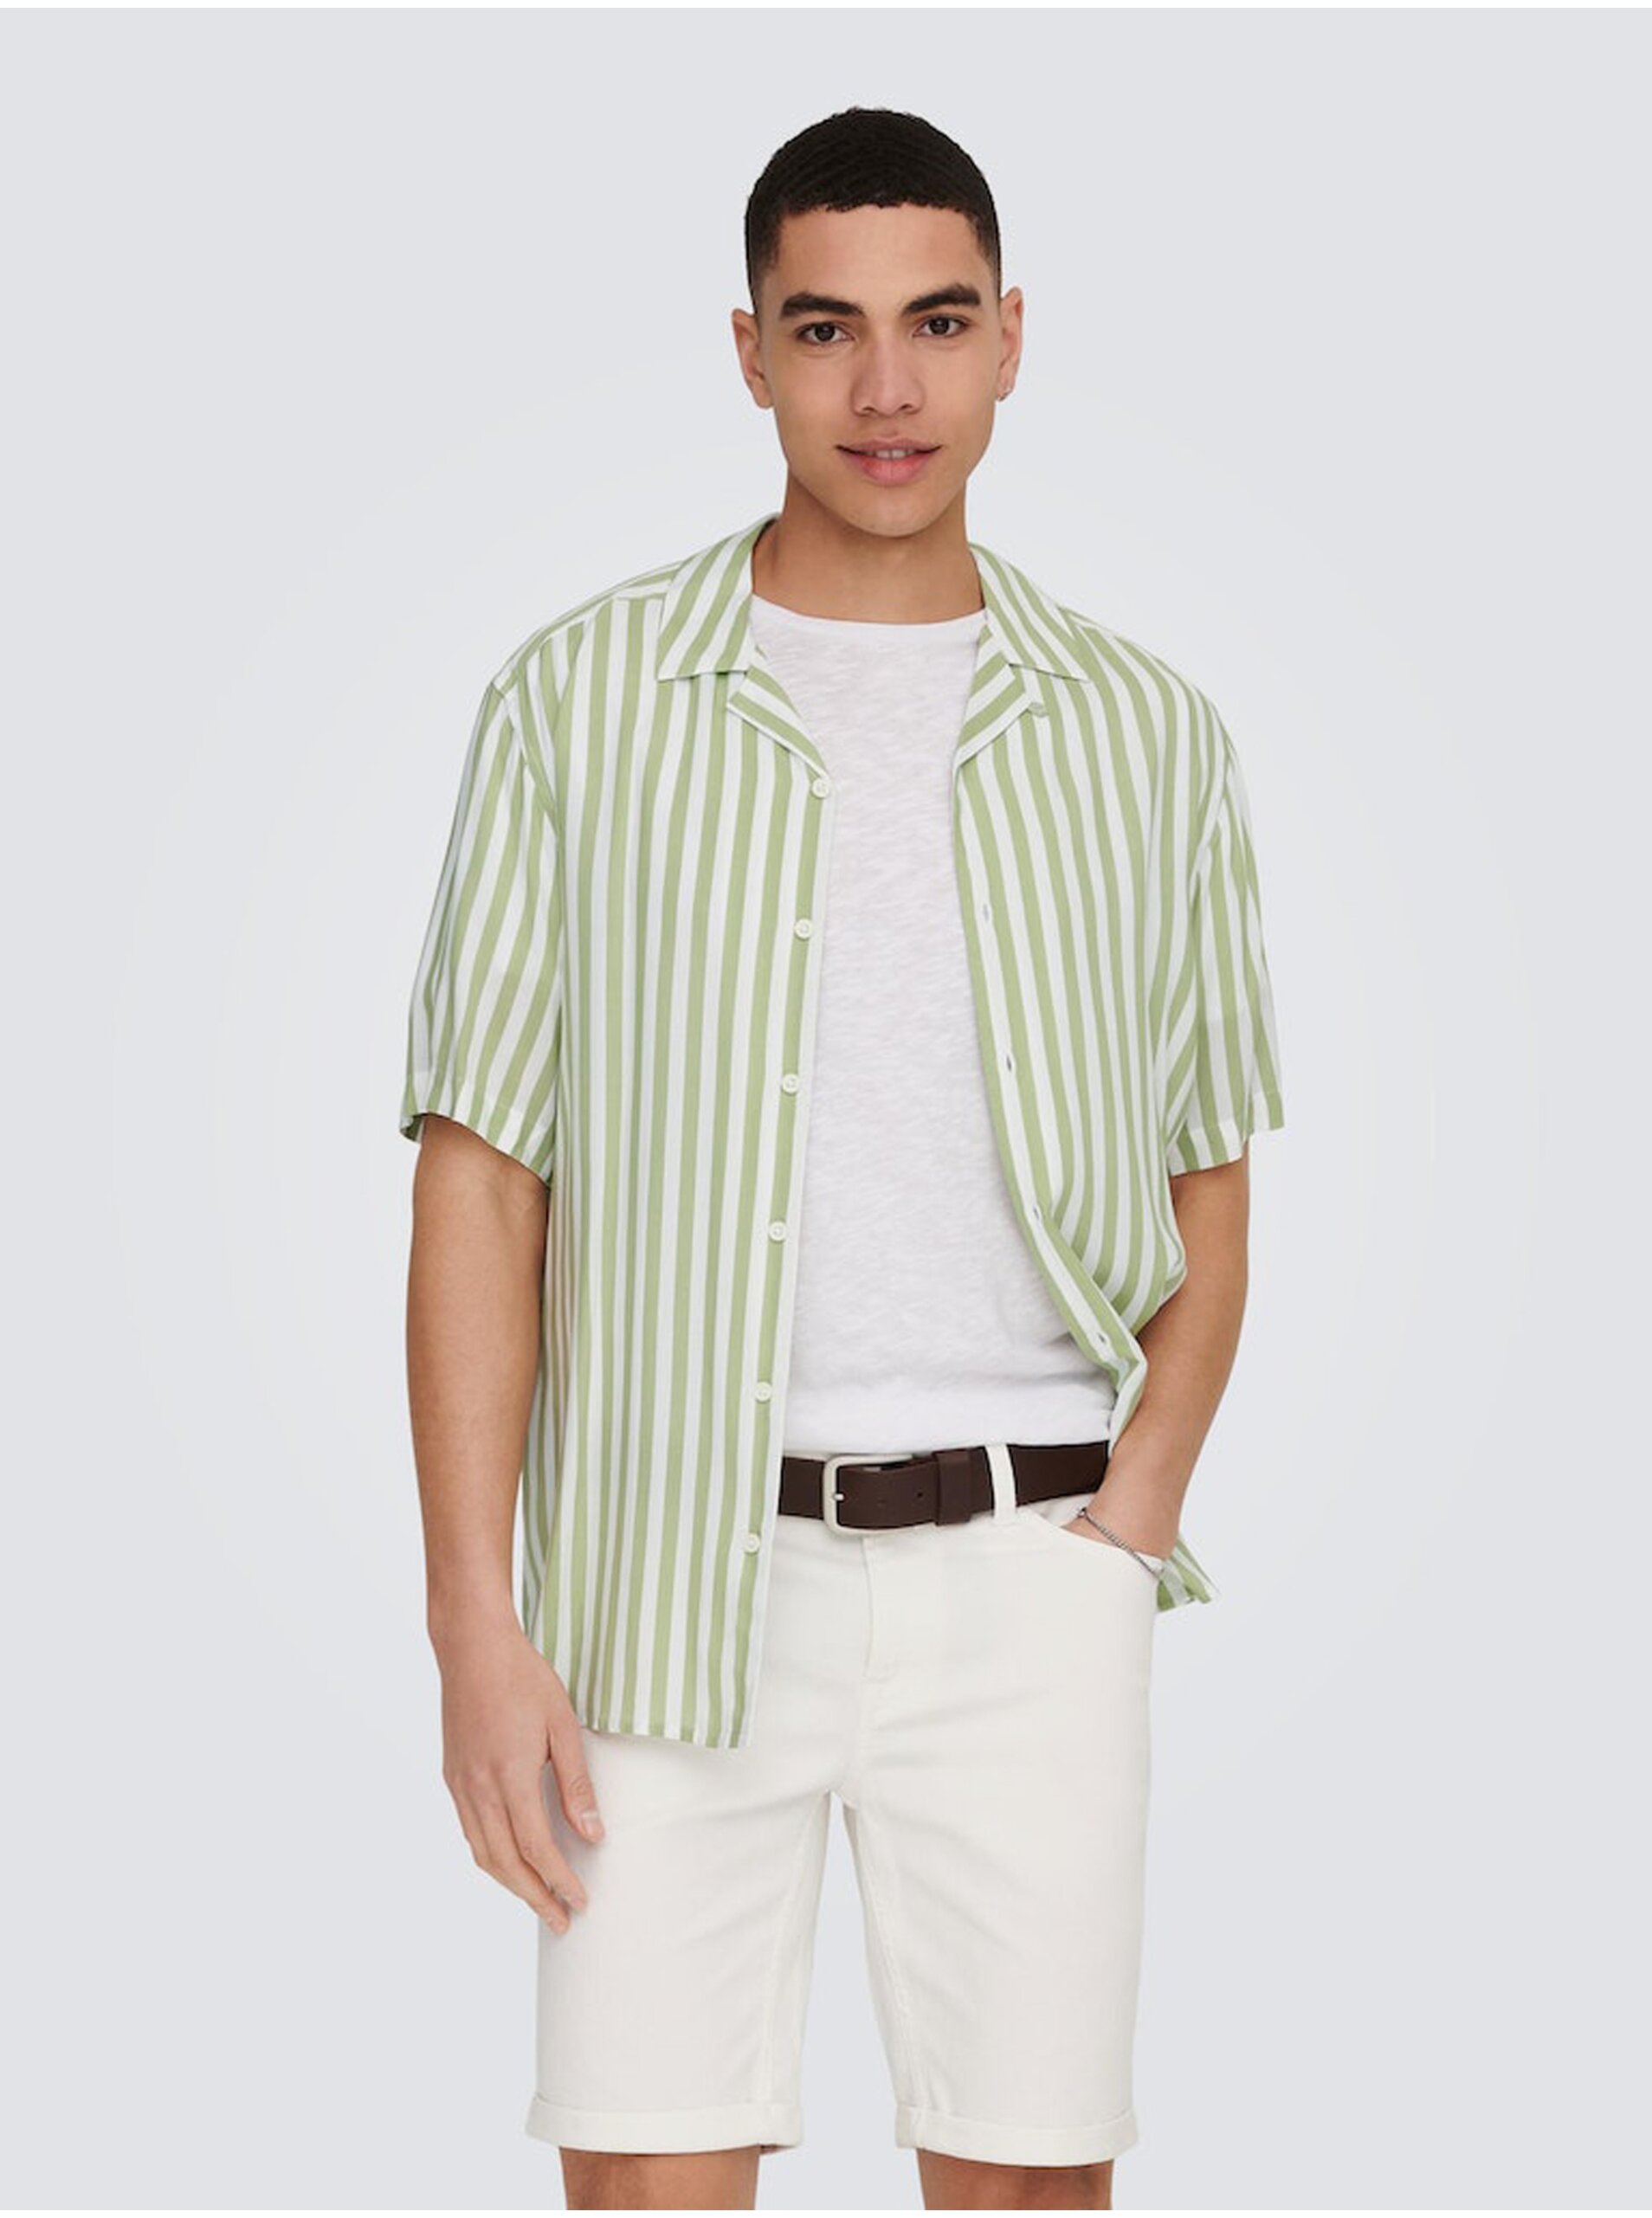 E-shop Bílo-zelená pánská pruhovaná košile s krátkým rukávem ONLY & SONS Wayne